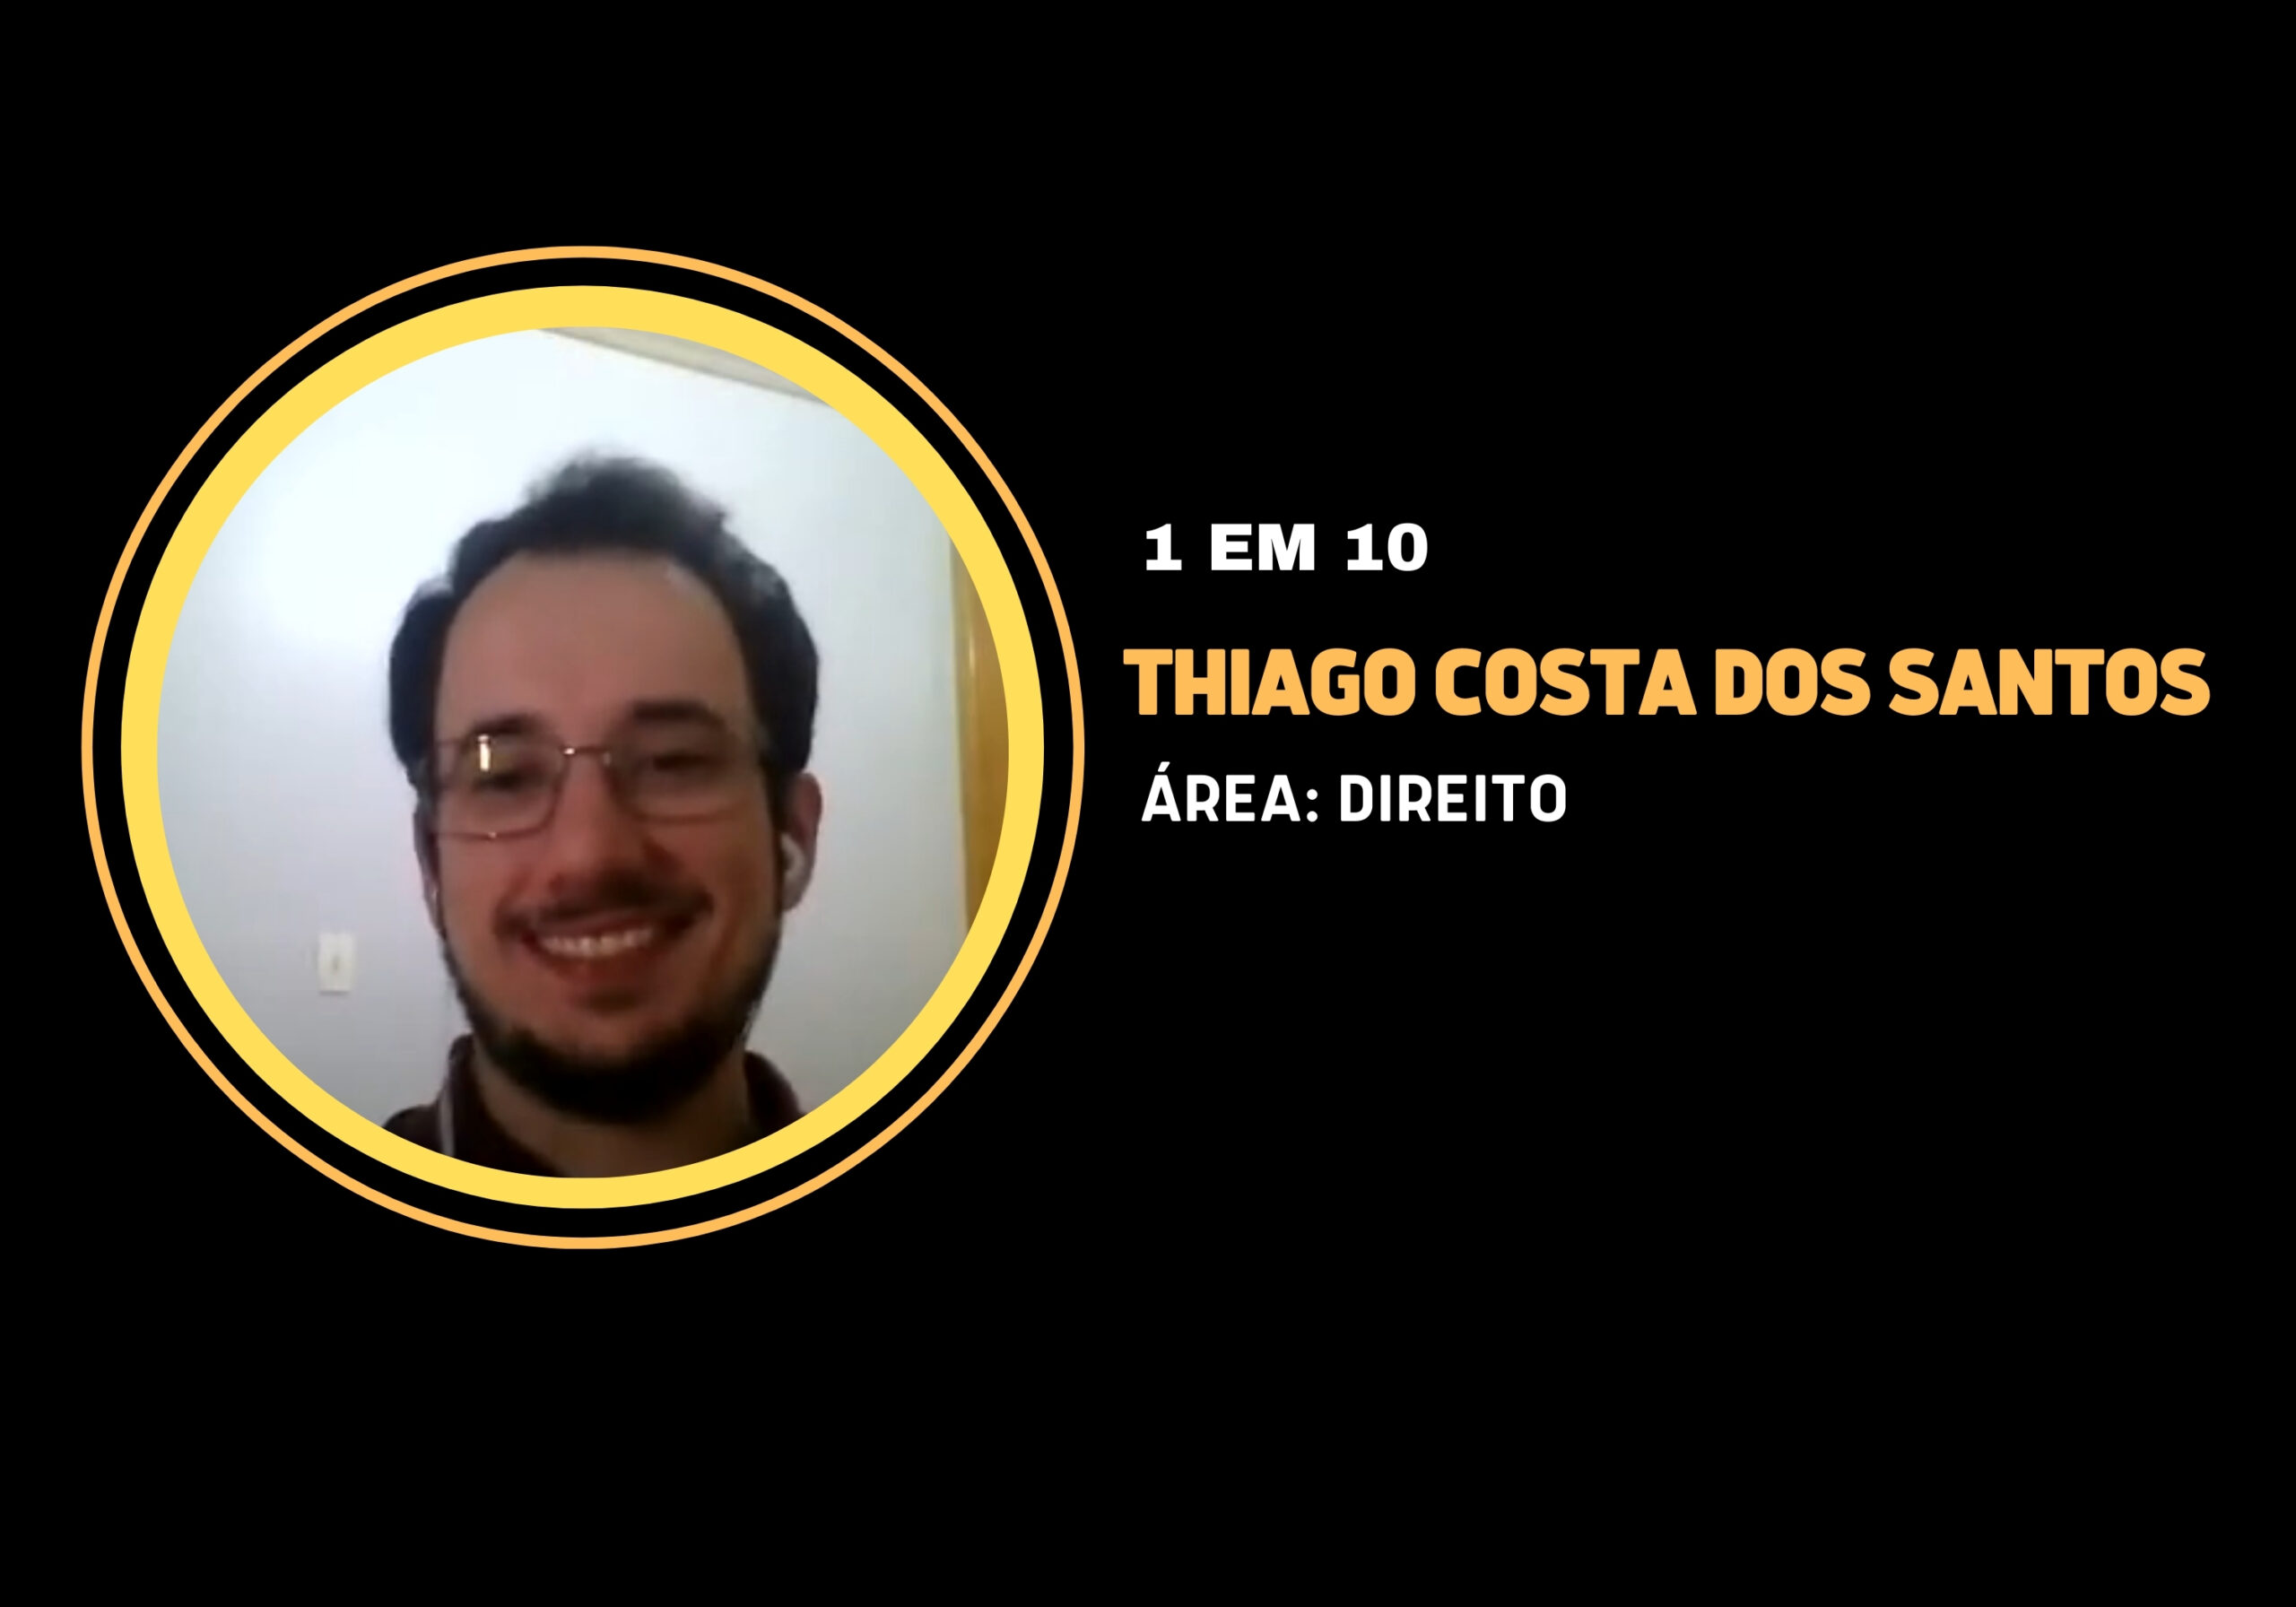 Thiago Costa dos Santos | 1 em 10